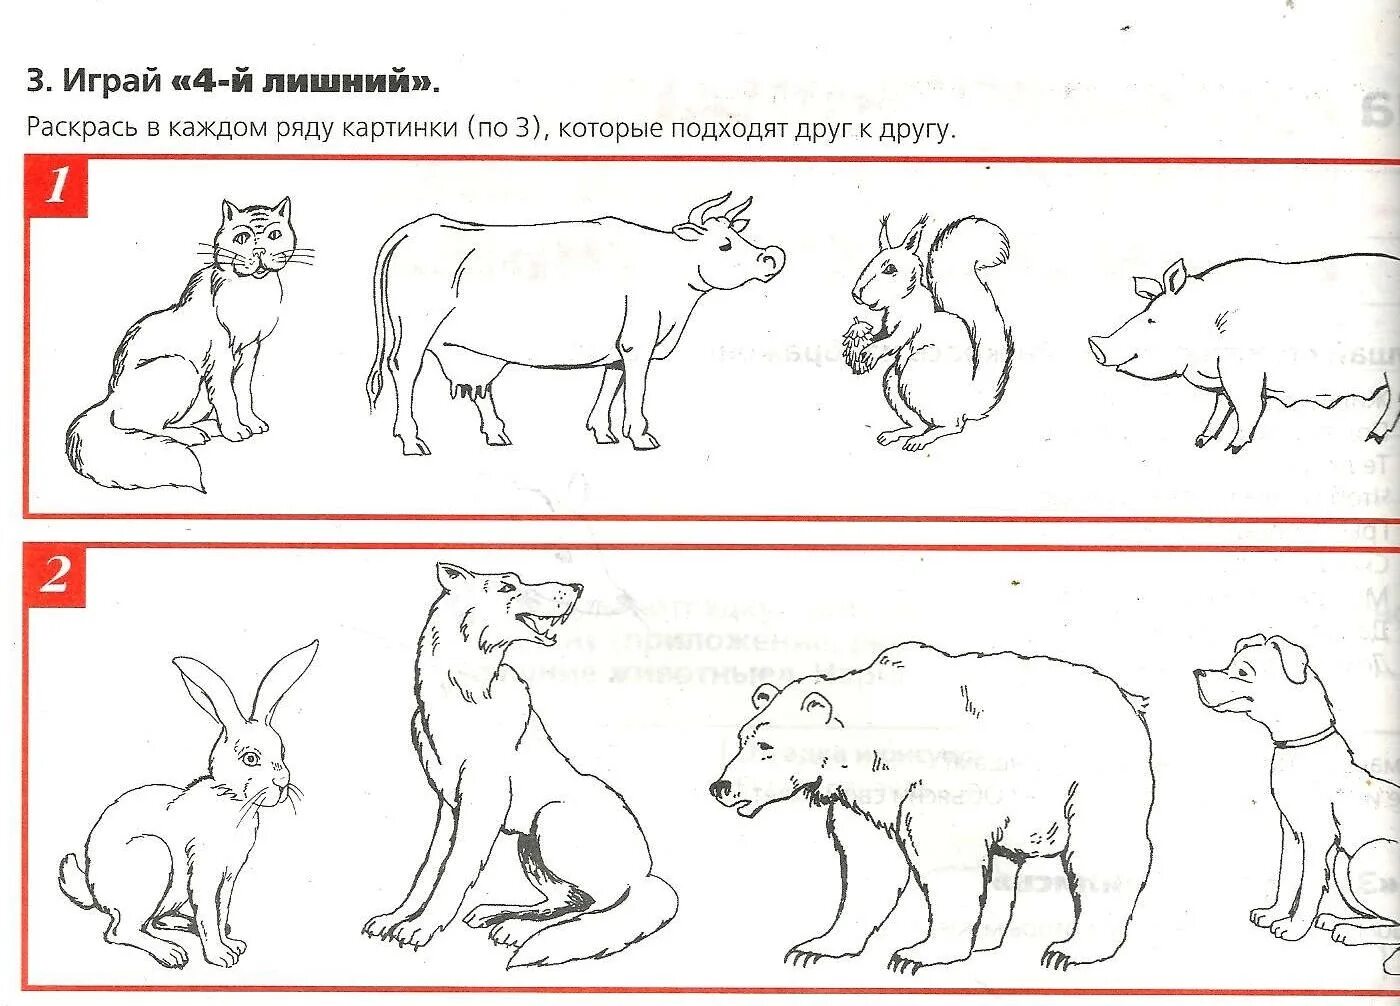 Картинки домашних животных